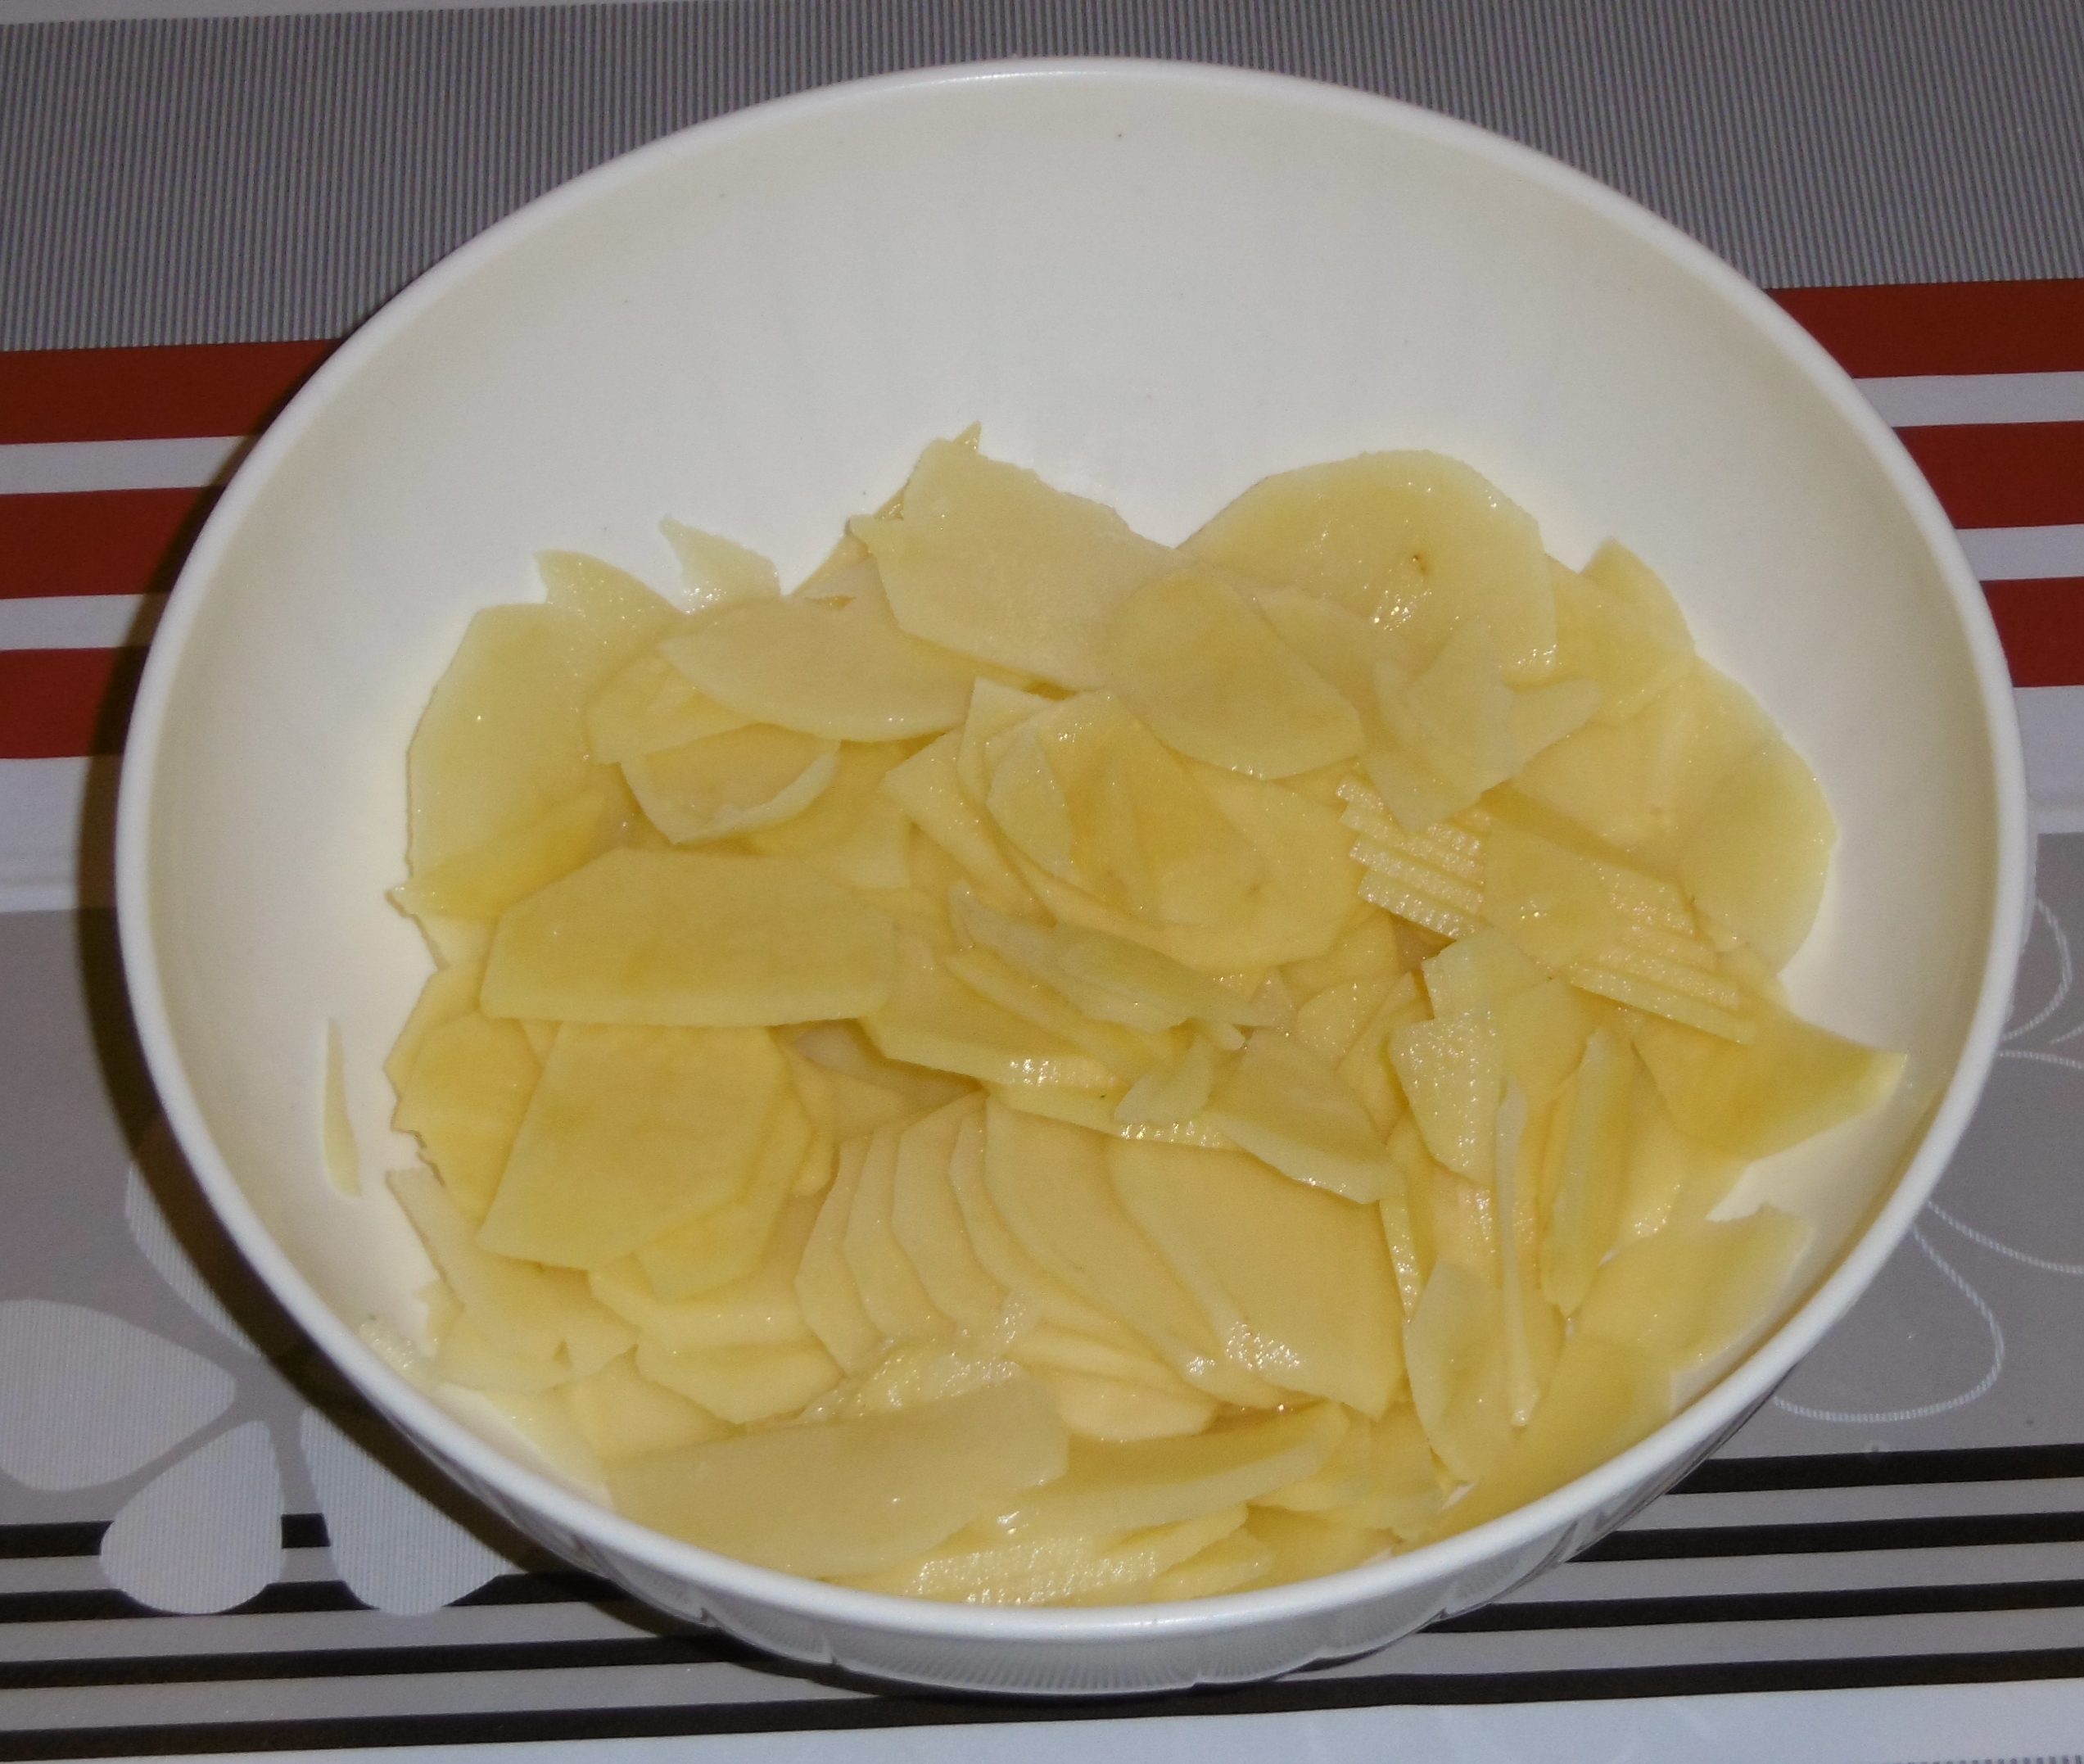 Branzino al forno con patate - Patate tagliate